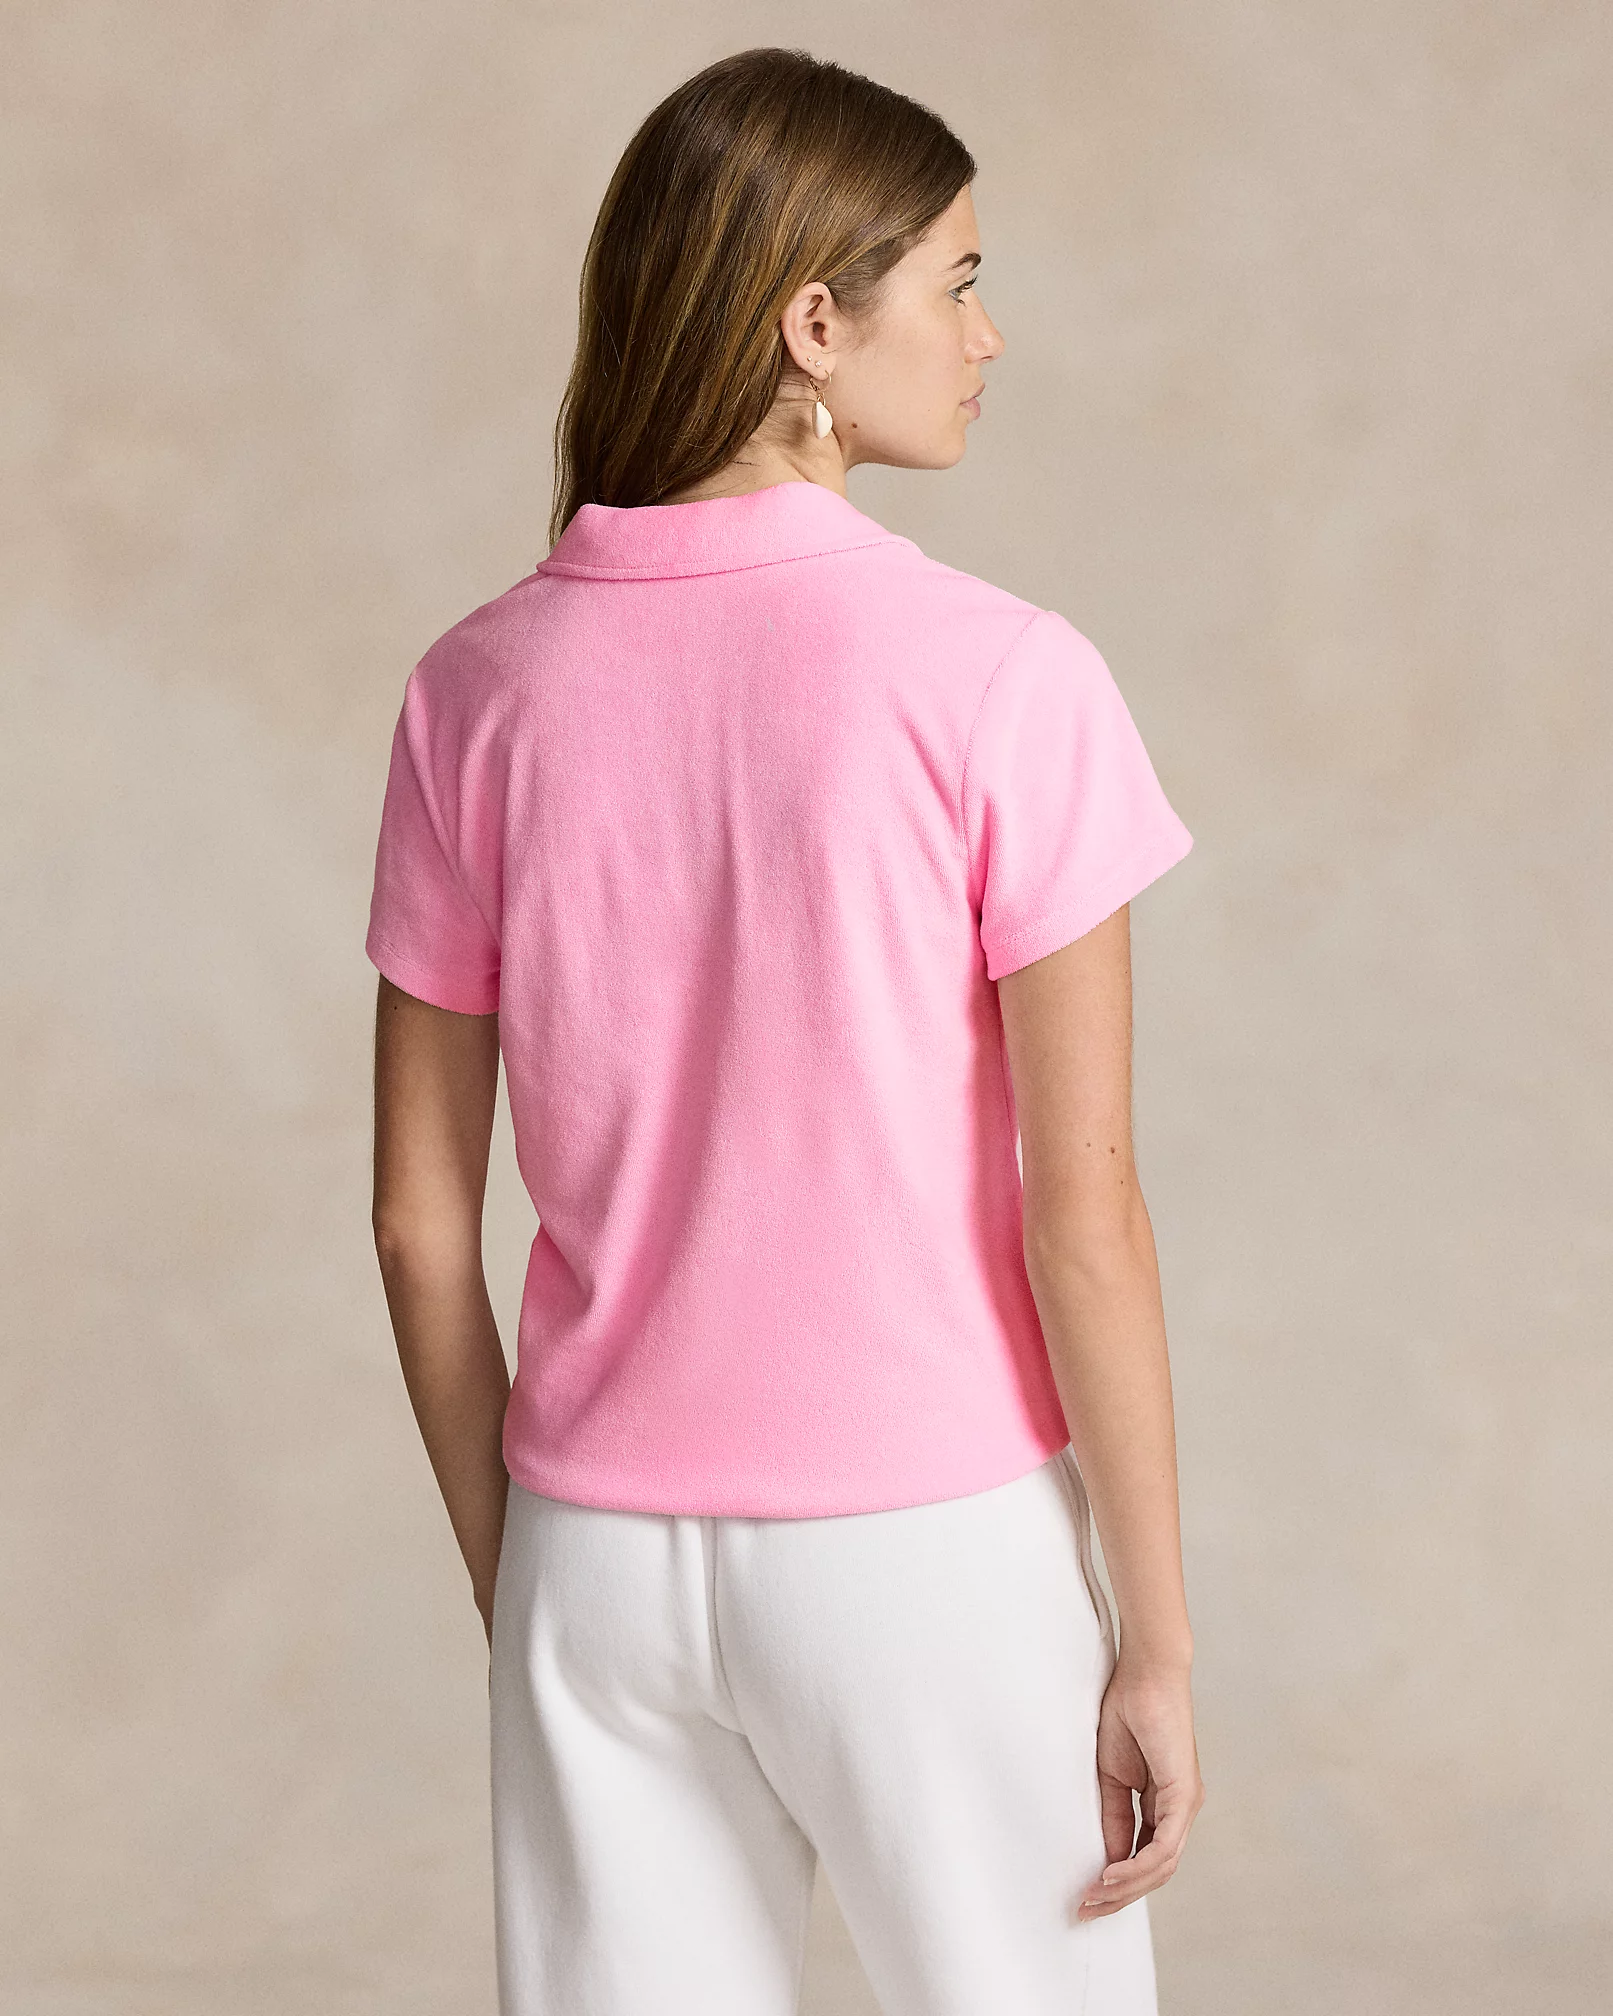 Polo Ralph Lauren - Shrunken Fit Terry Polo Shirt - Carmel Pink